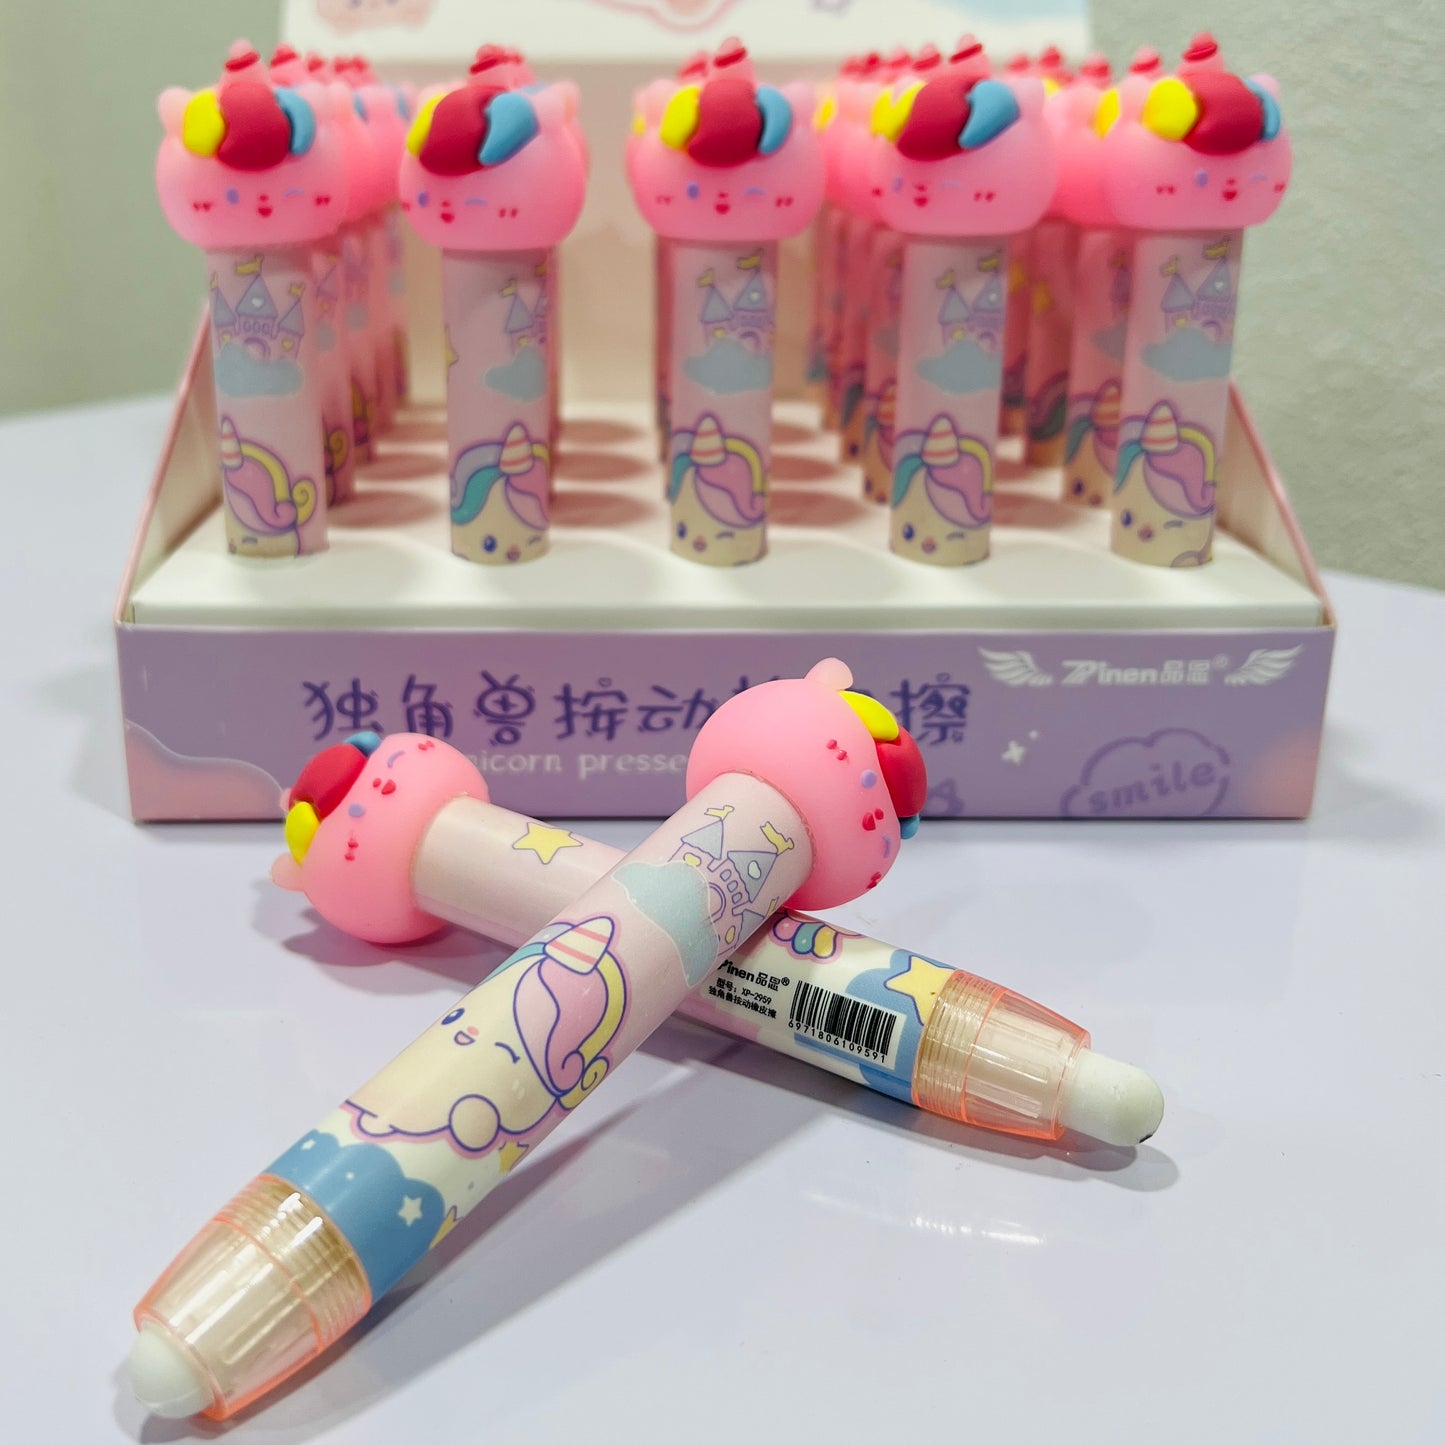 Astro-Unicorn Press Pen Erasers